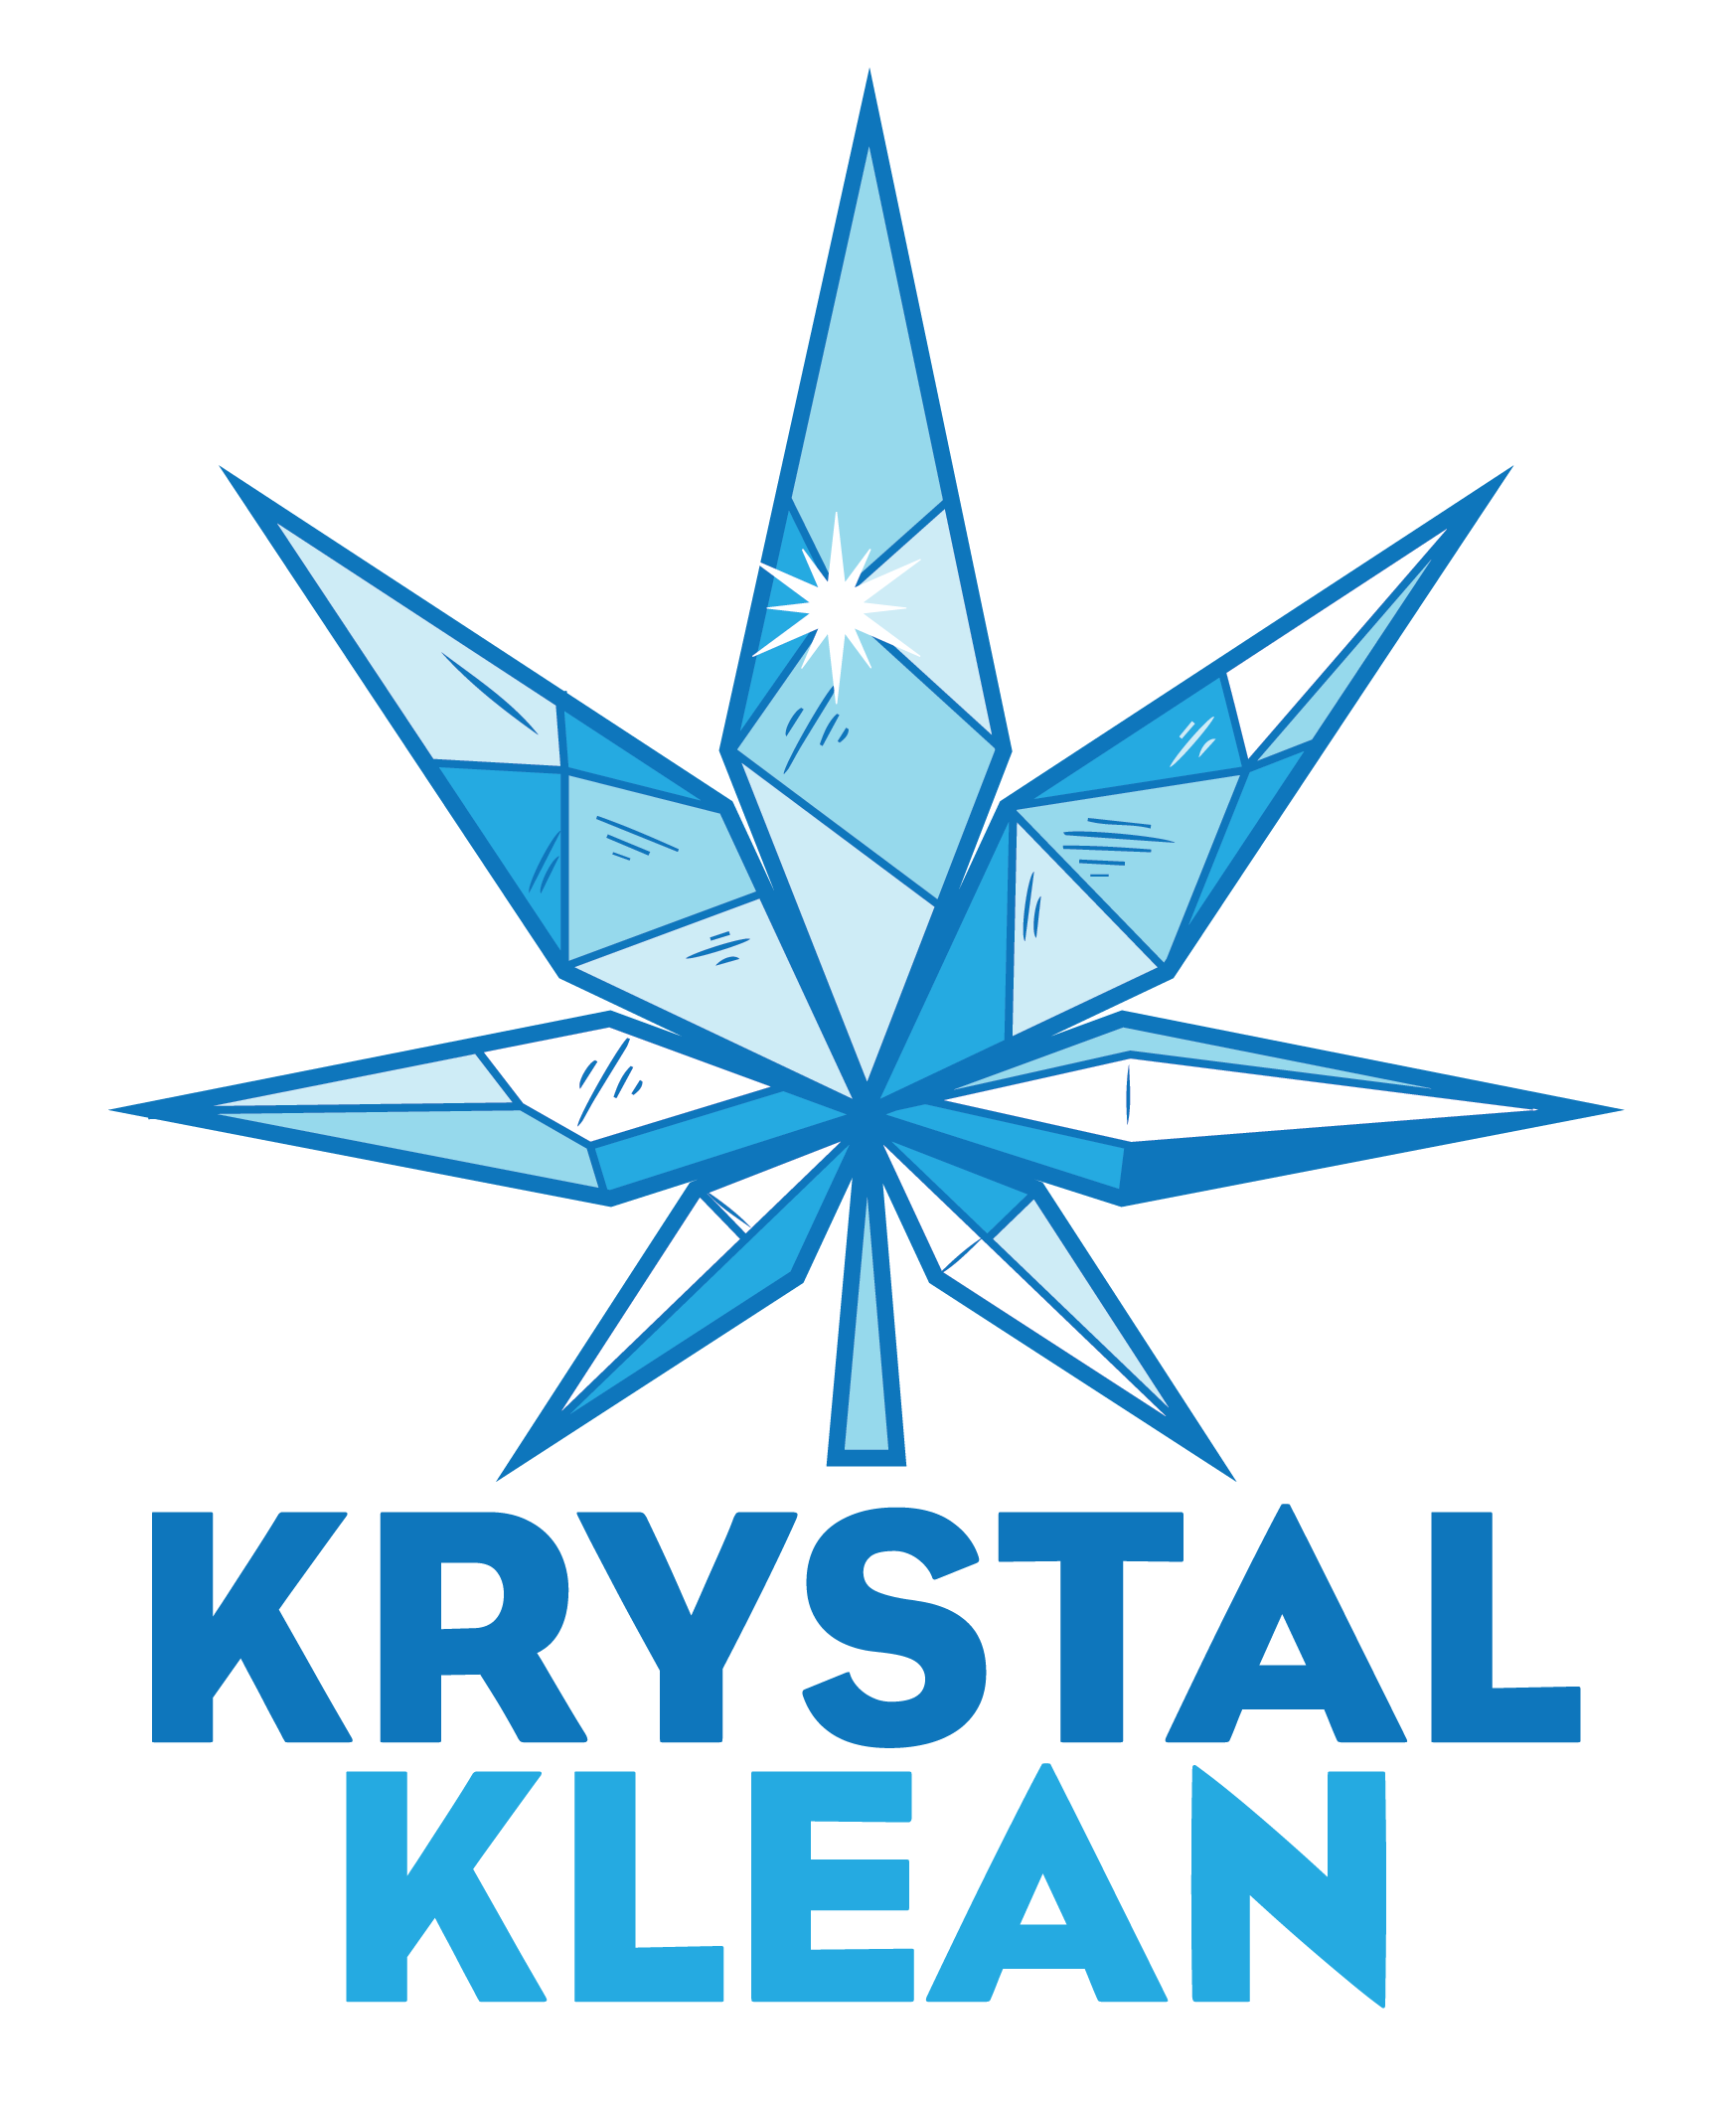 Natural Cleaner Krystalklean Us